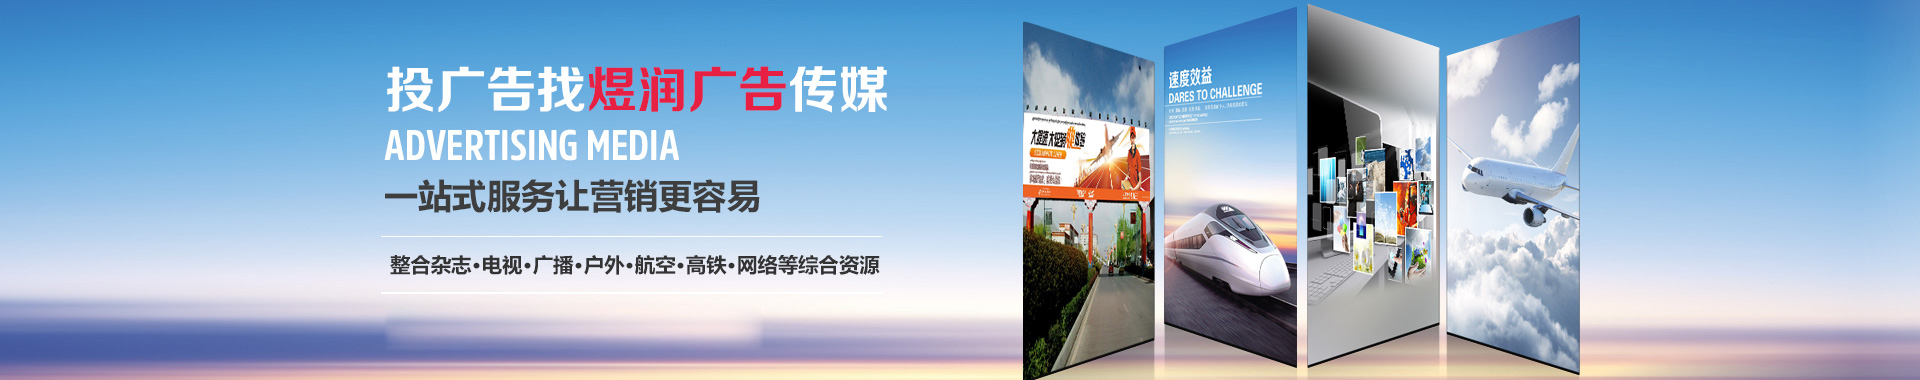 深圳交通广播FM106.2广告-2019较新广告价格-广告电话